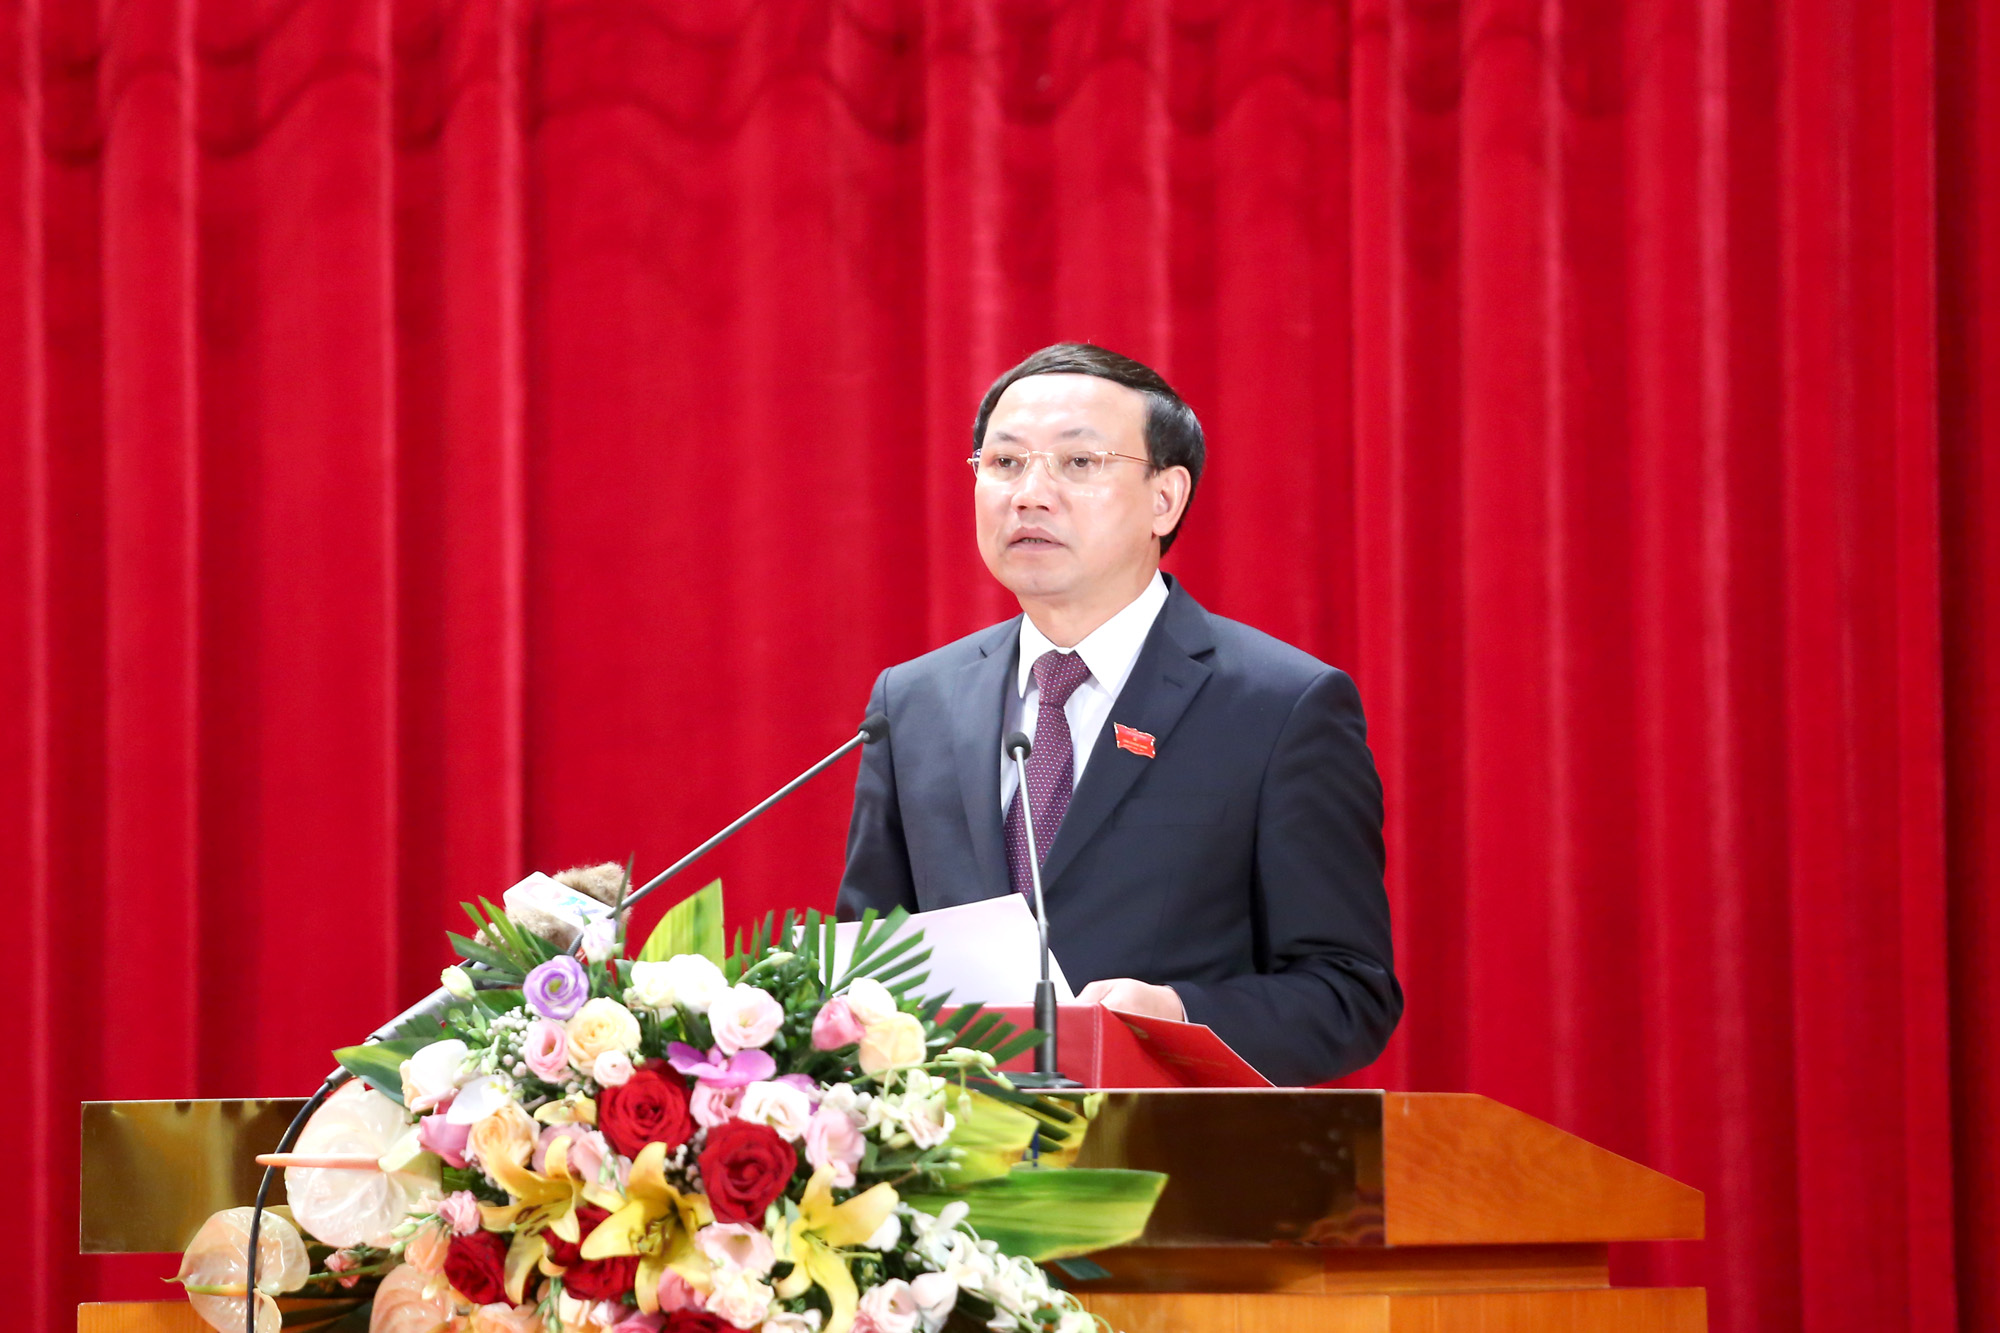 Đồng chí Nguyễn Xuân Ký, Bí thư Tỉnh ủy, Chủ tịch HĐND tỉnh, phát biểu bế mạc kỳ họp